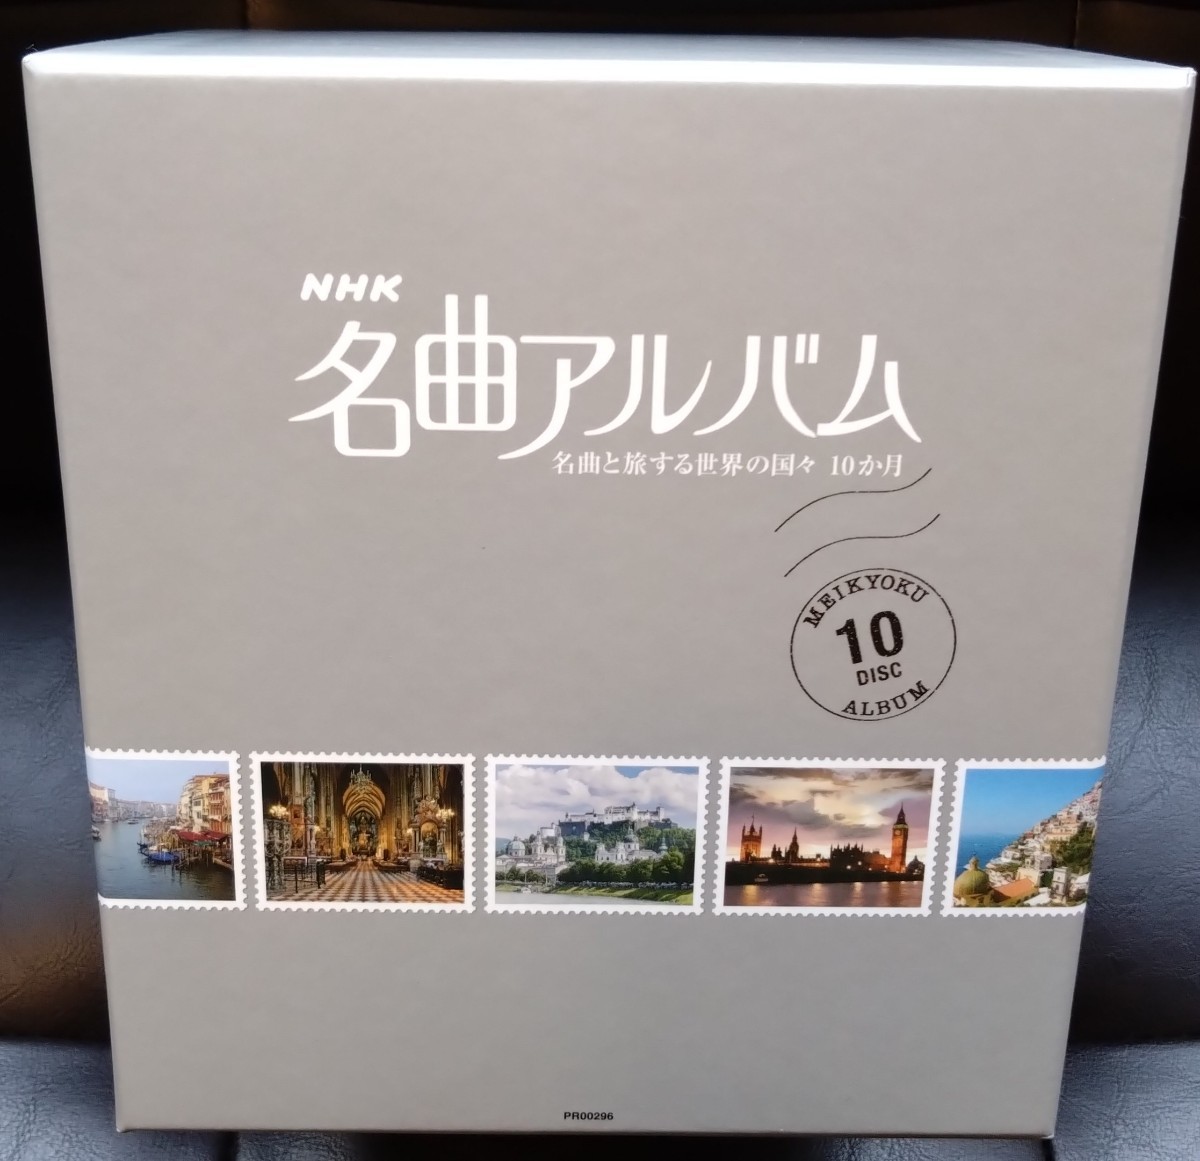 【送料無料】 NHK 名曲アルバム 10枚組Blu-ray BOX セル版